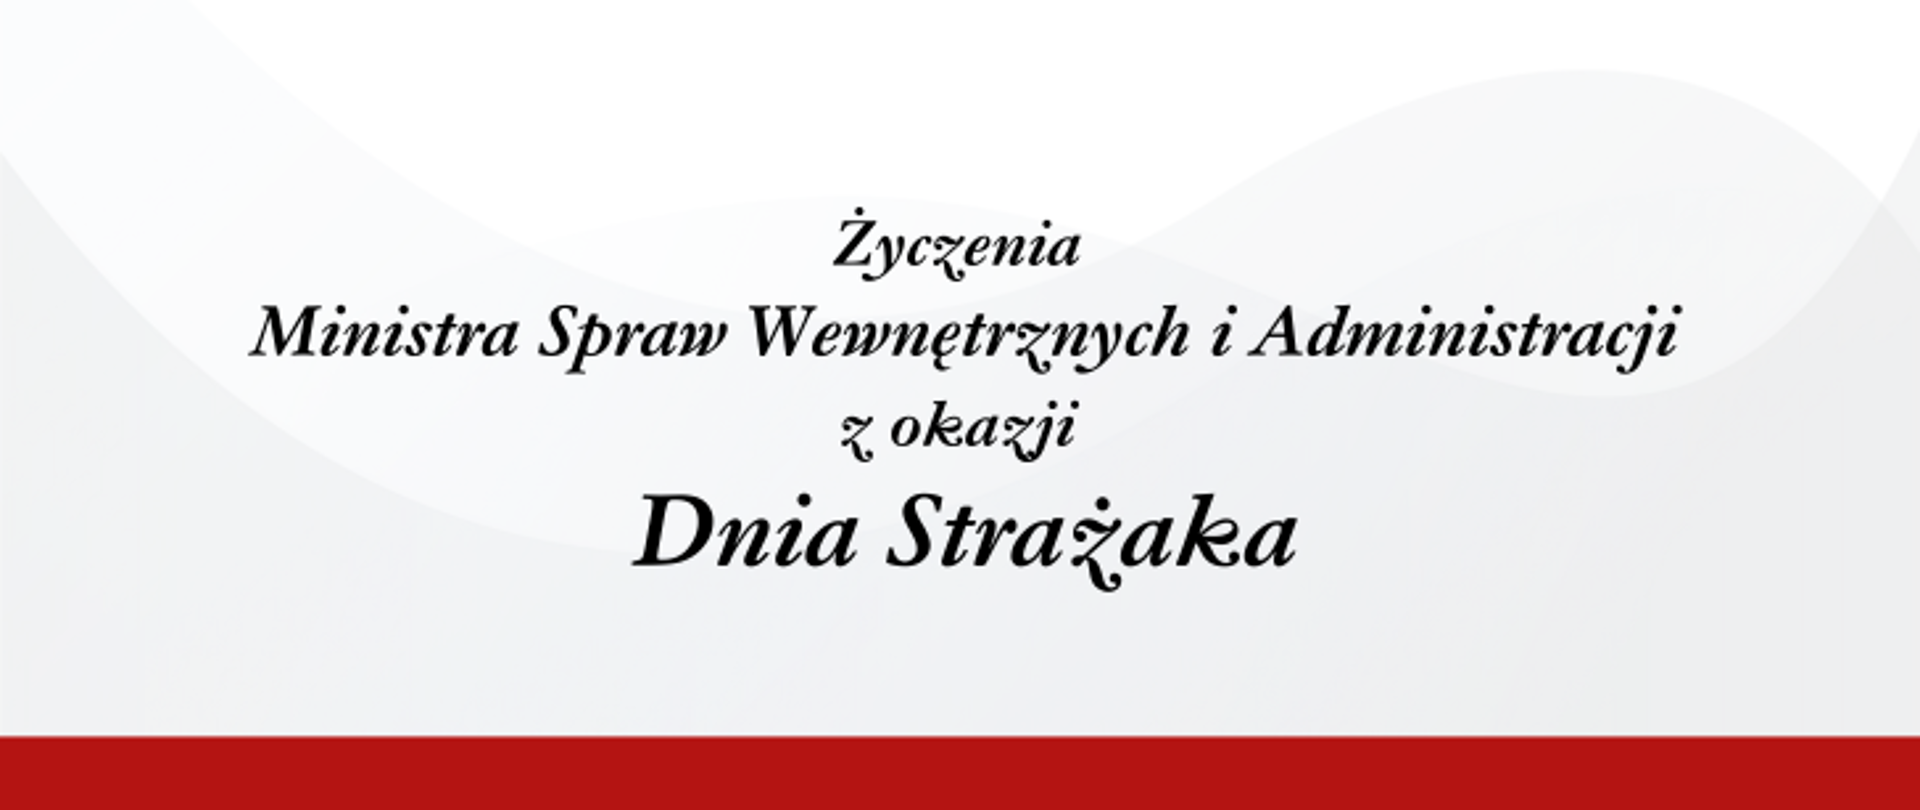 Na zdjęciu widzimy baner z napisem " Życzenia Ministra Spraw Wewnętrznych i Administracji z okazji Dnia Strażaka"